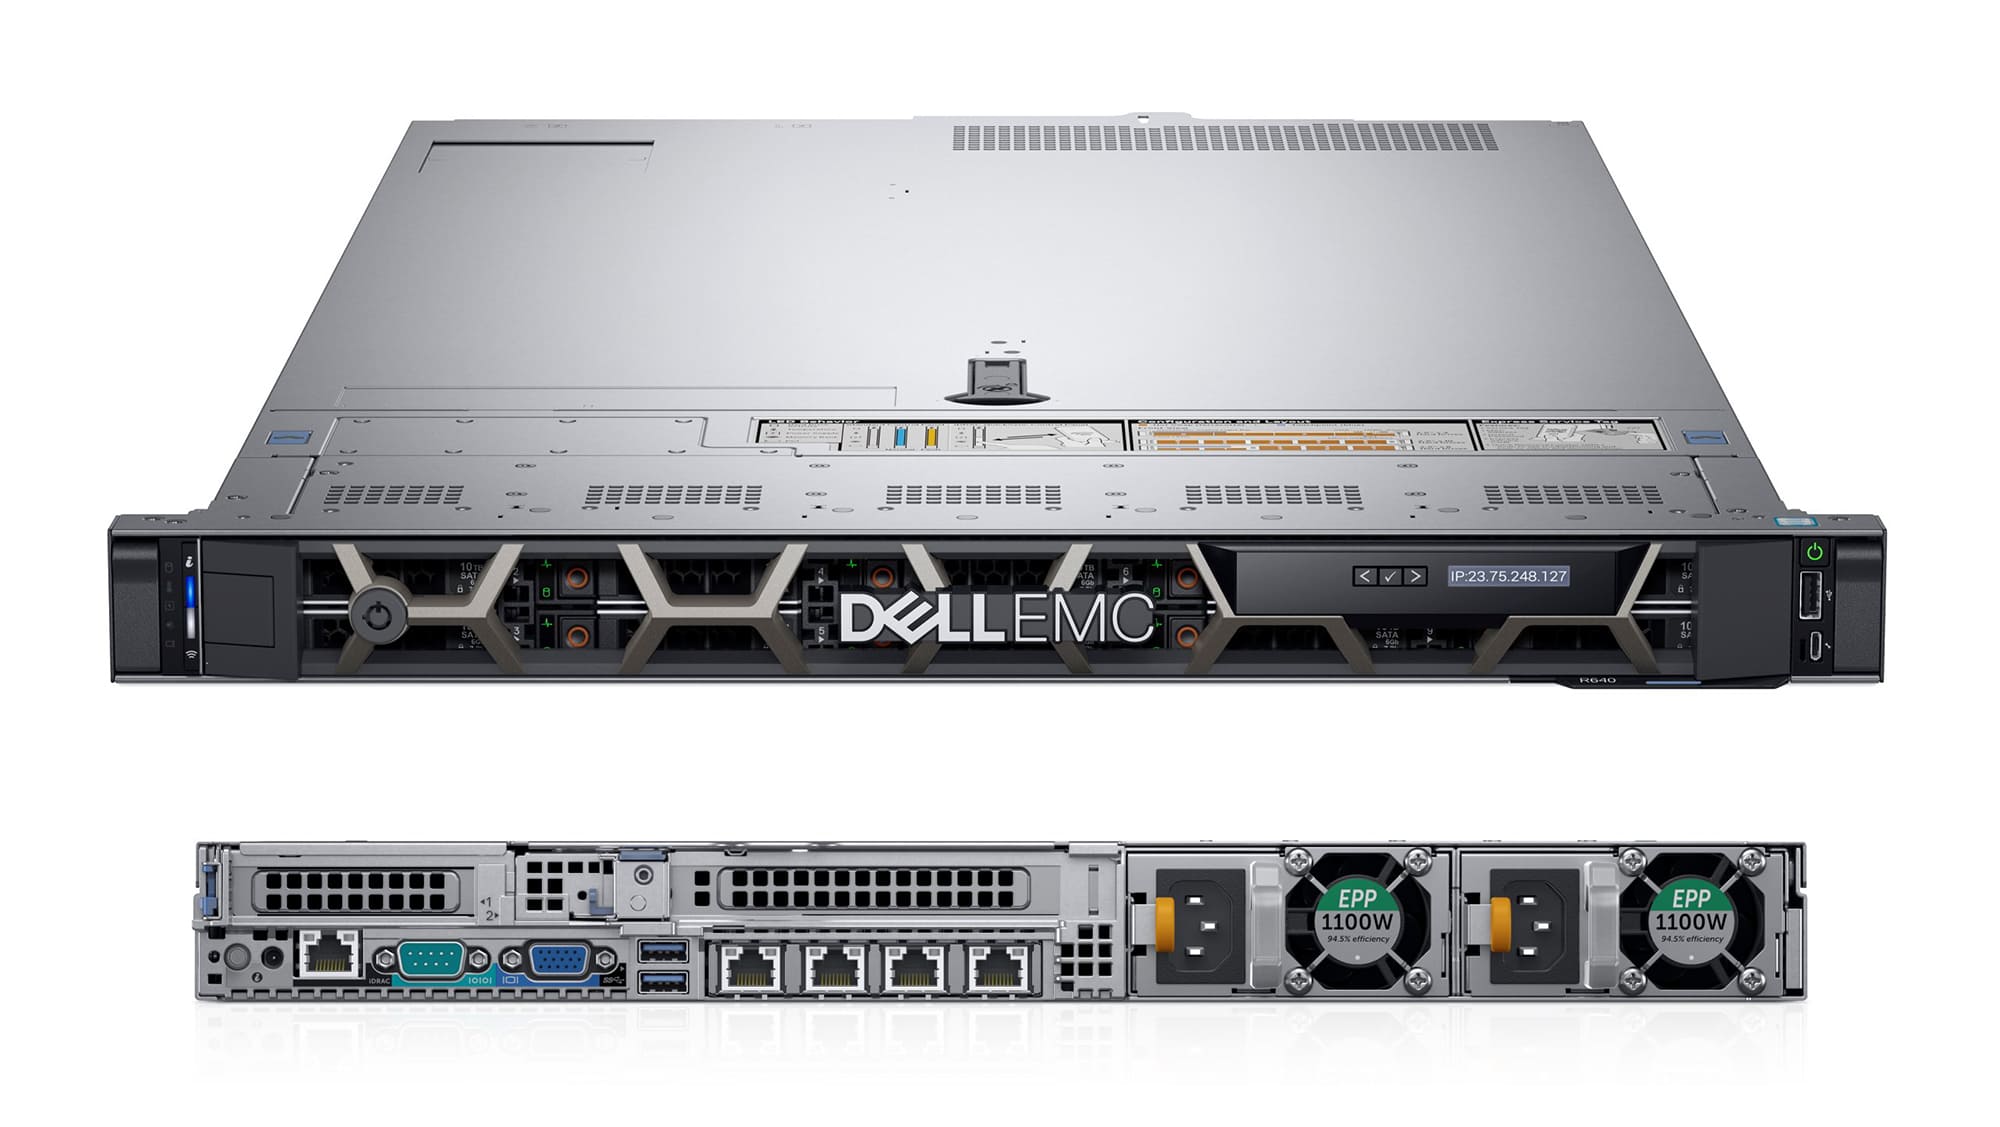 Máy chủ Dell EMC R640 - Giải quyết mọi “bài toán” lưu trữ, bảo mật dữ liệu